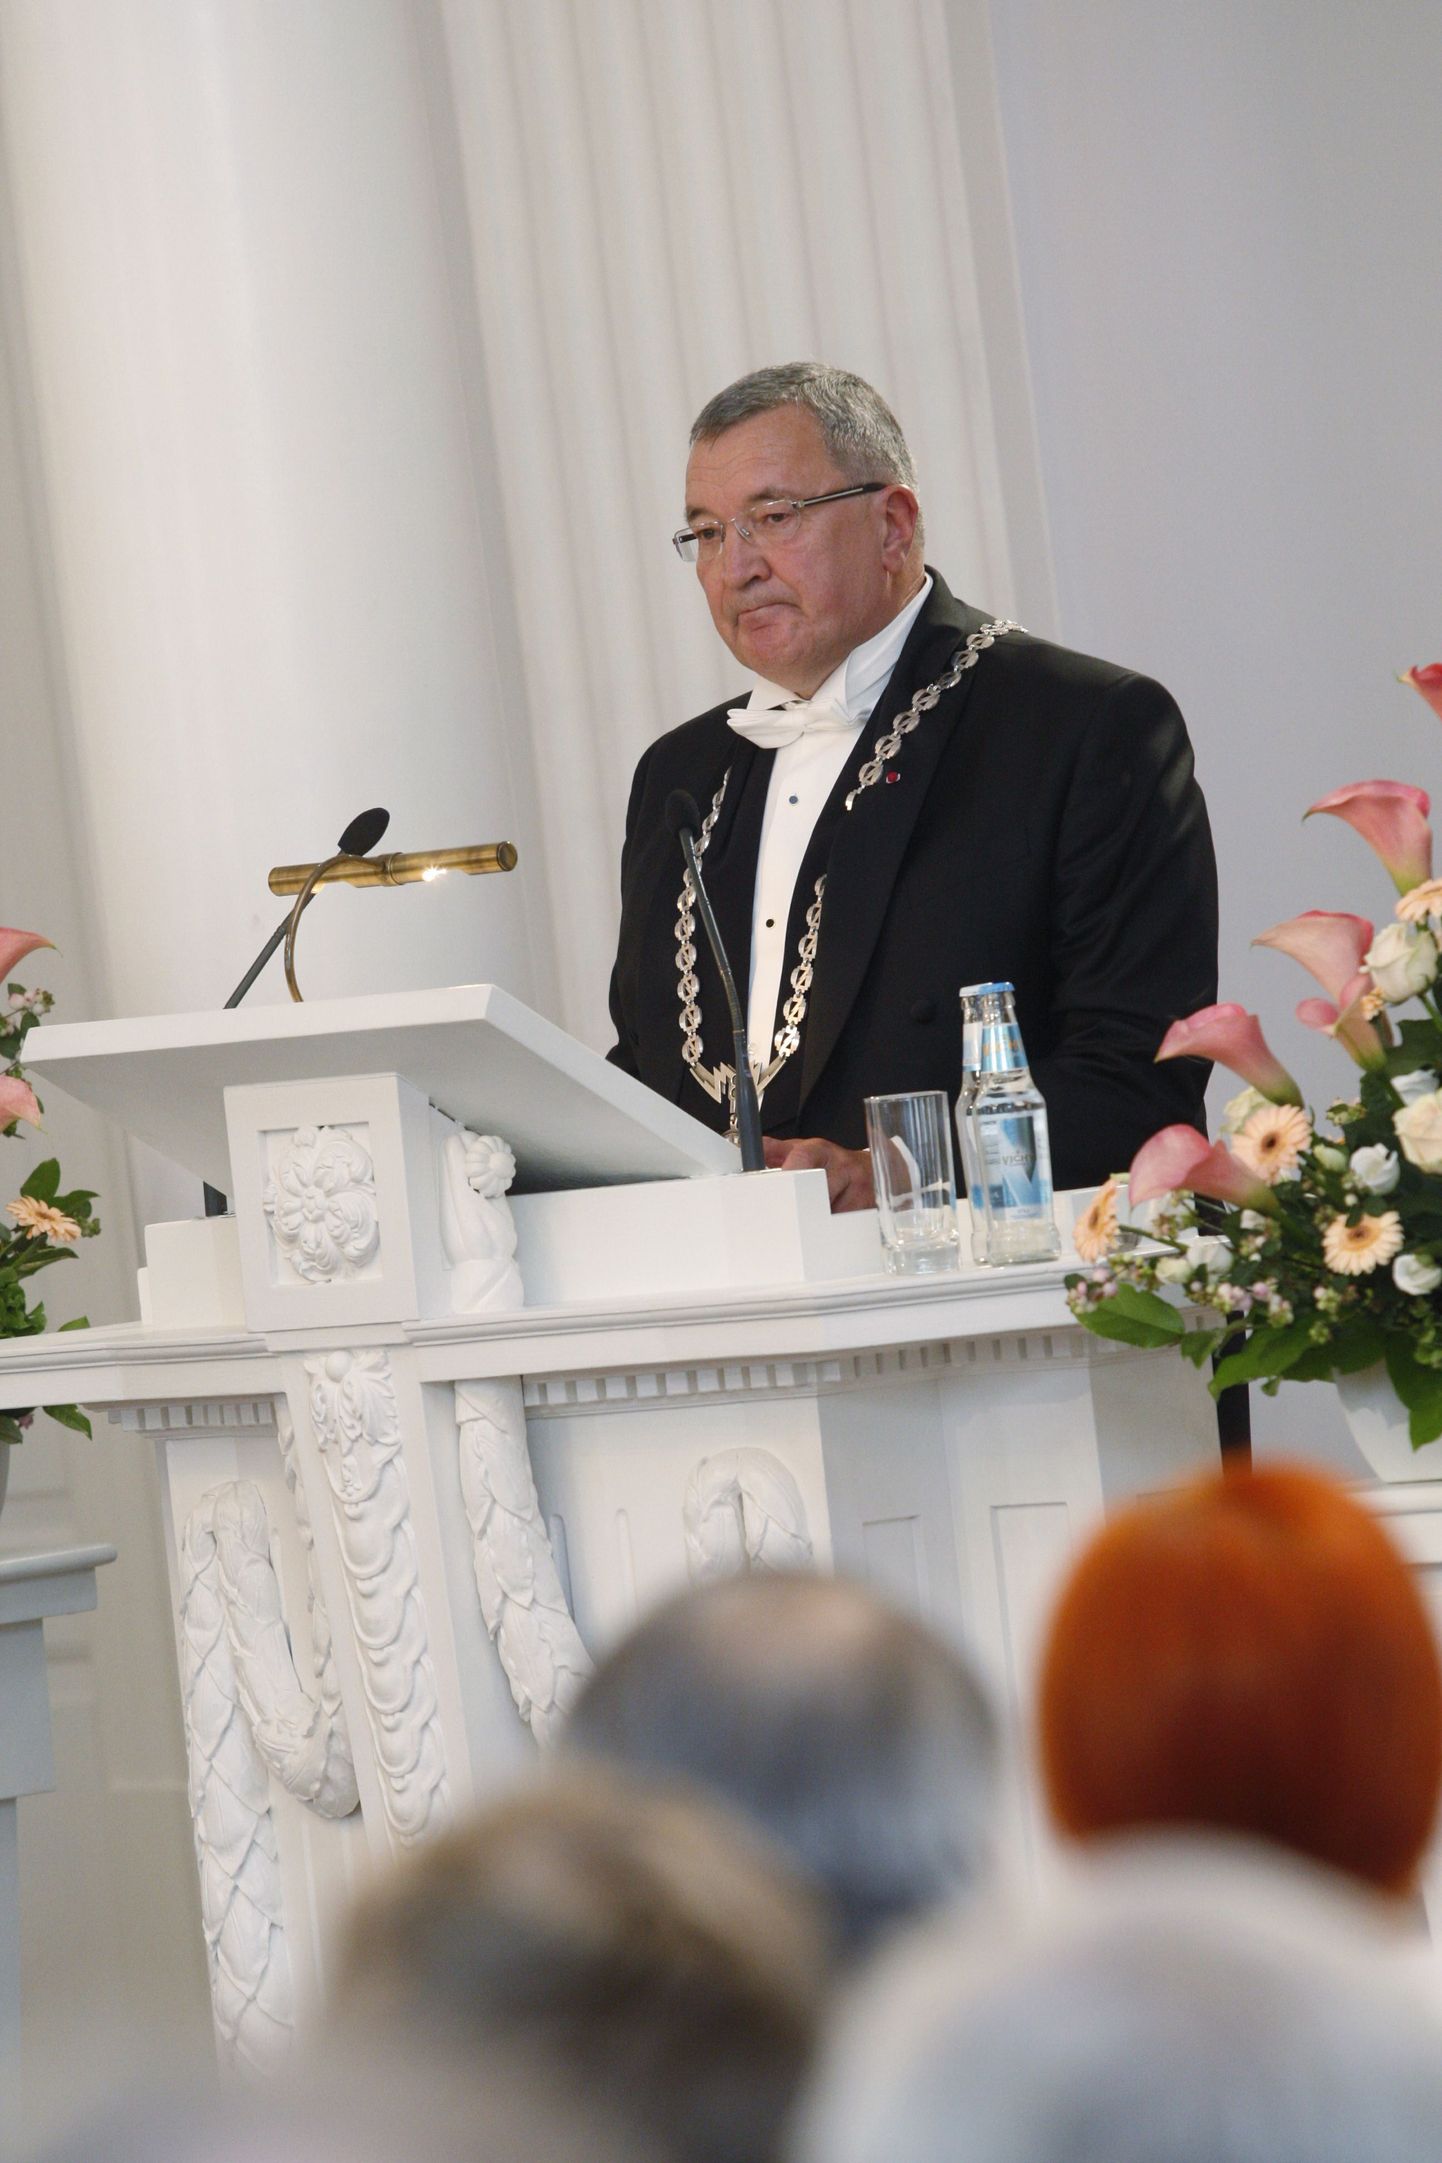 Pildil TTÜ rektor Andres Keevallik Tartu Ülikooli aulas.